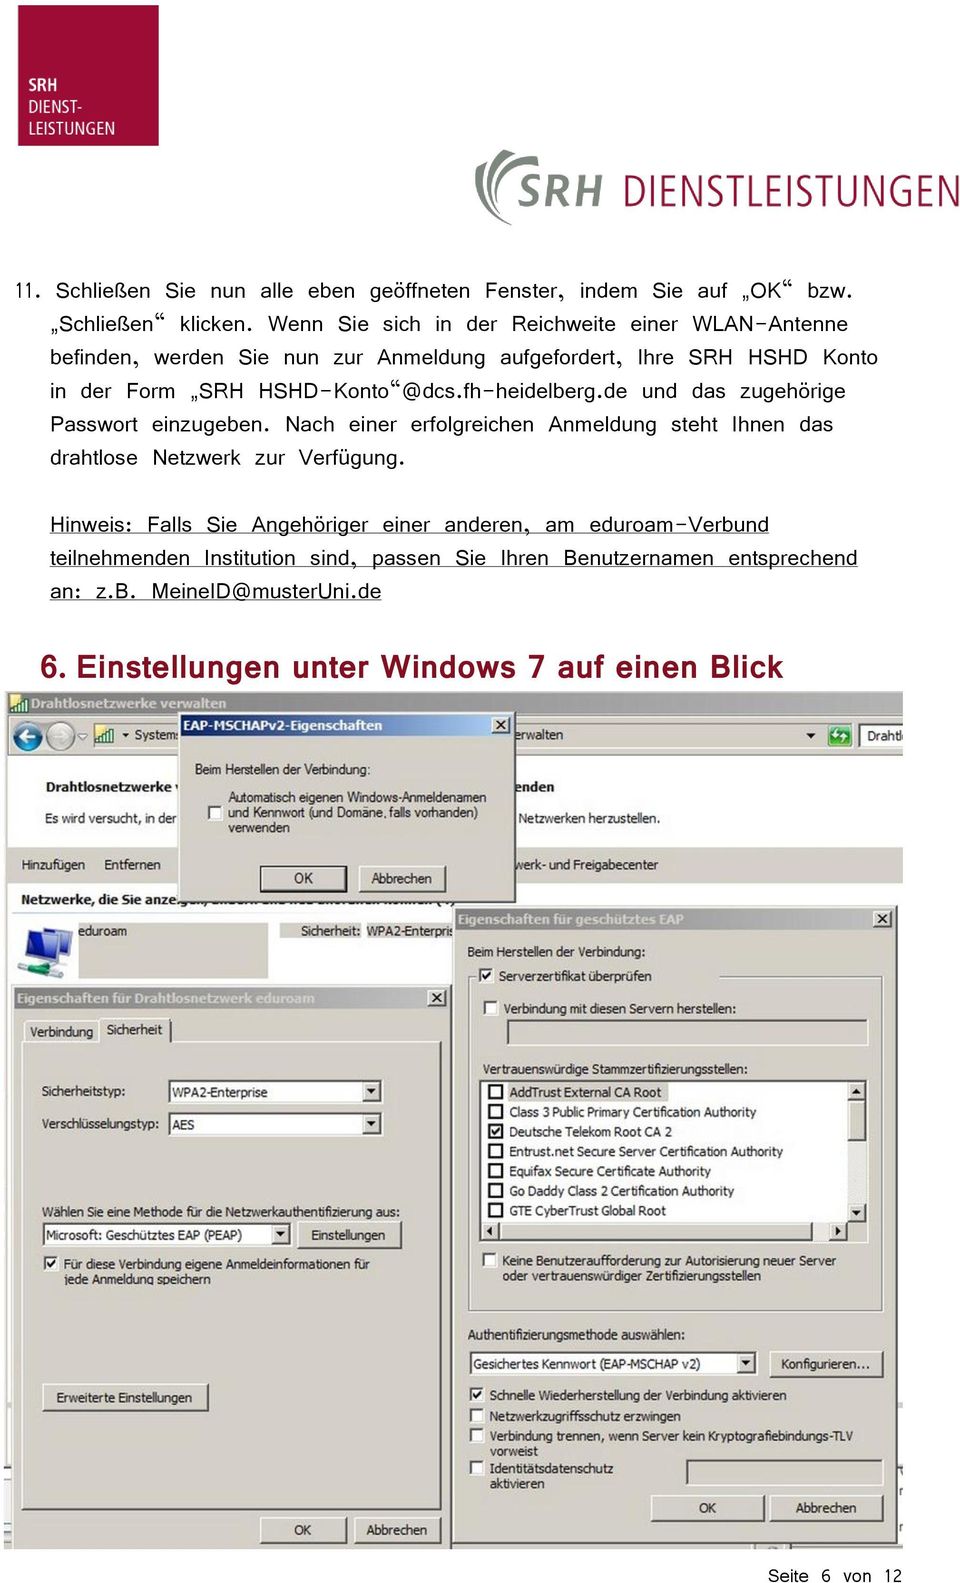 fh-heidelberg.de und das zugehörige Passwort einzugeben. Nach einer erfolgreichen Anmeldung steht Ihnen das drahtlose Netzwerk zur Verfügung.